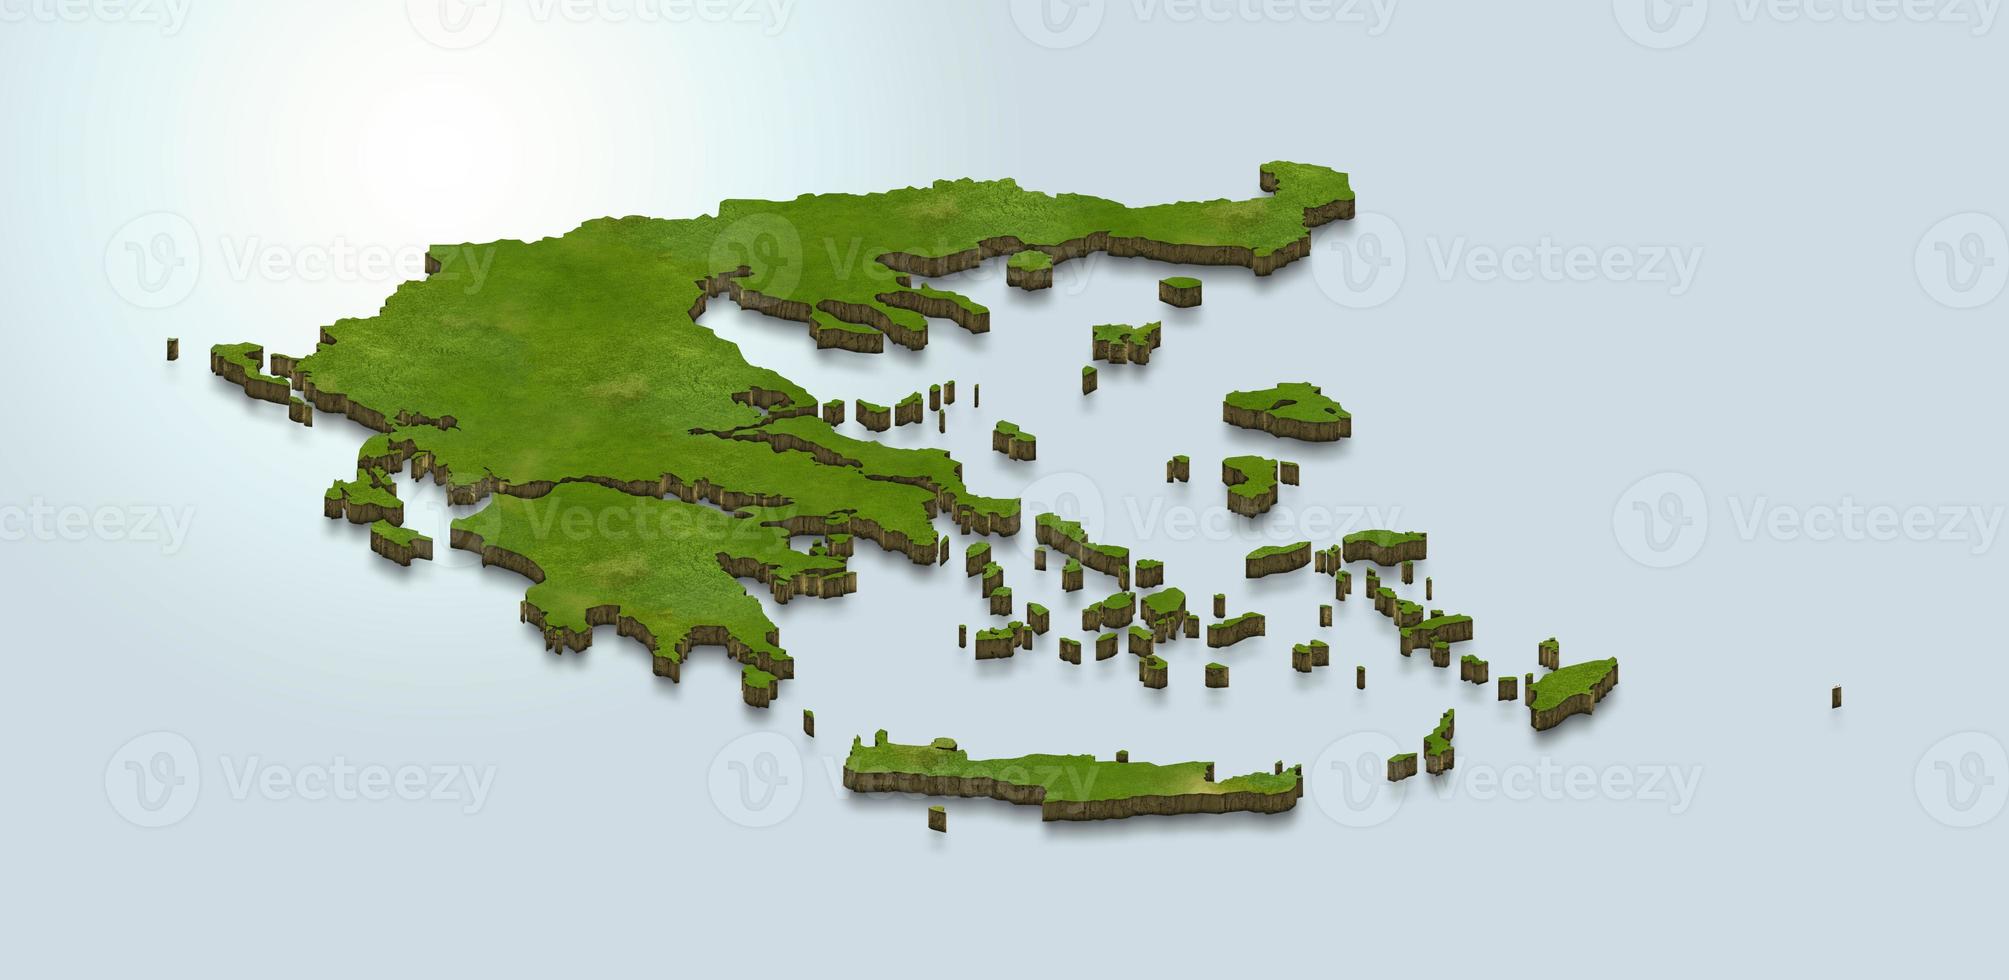 ilustração do mapa 3D da Grécia foto